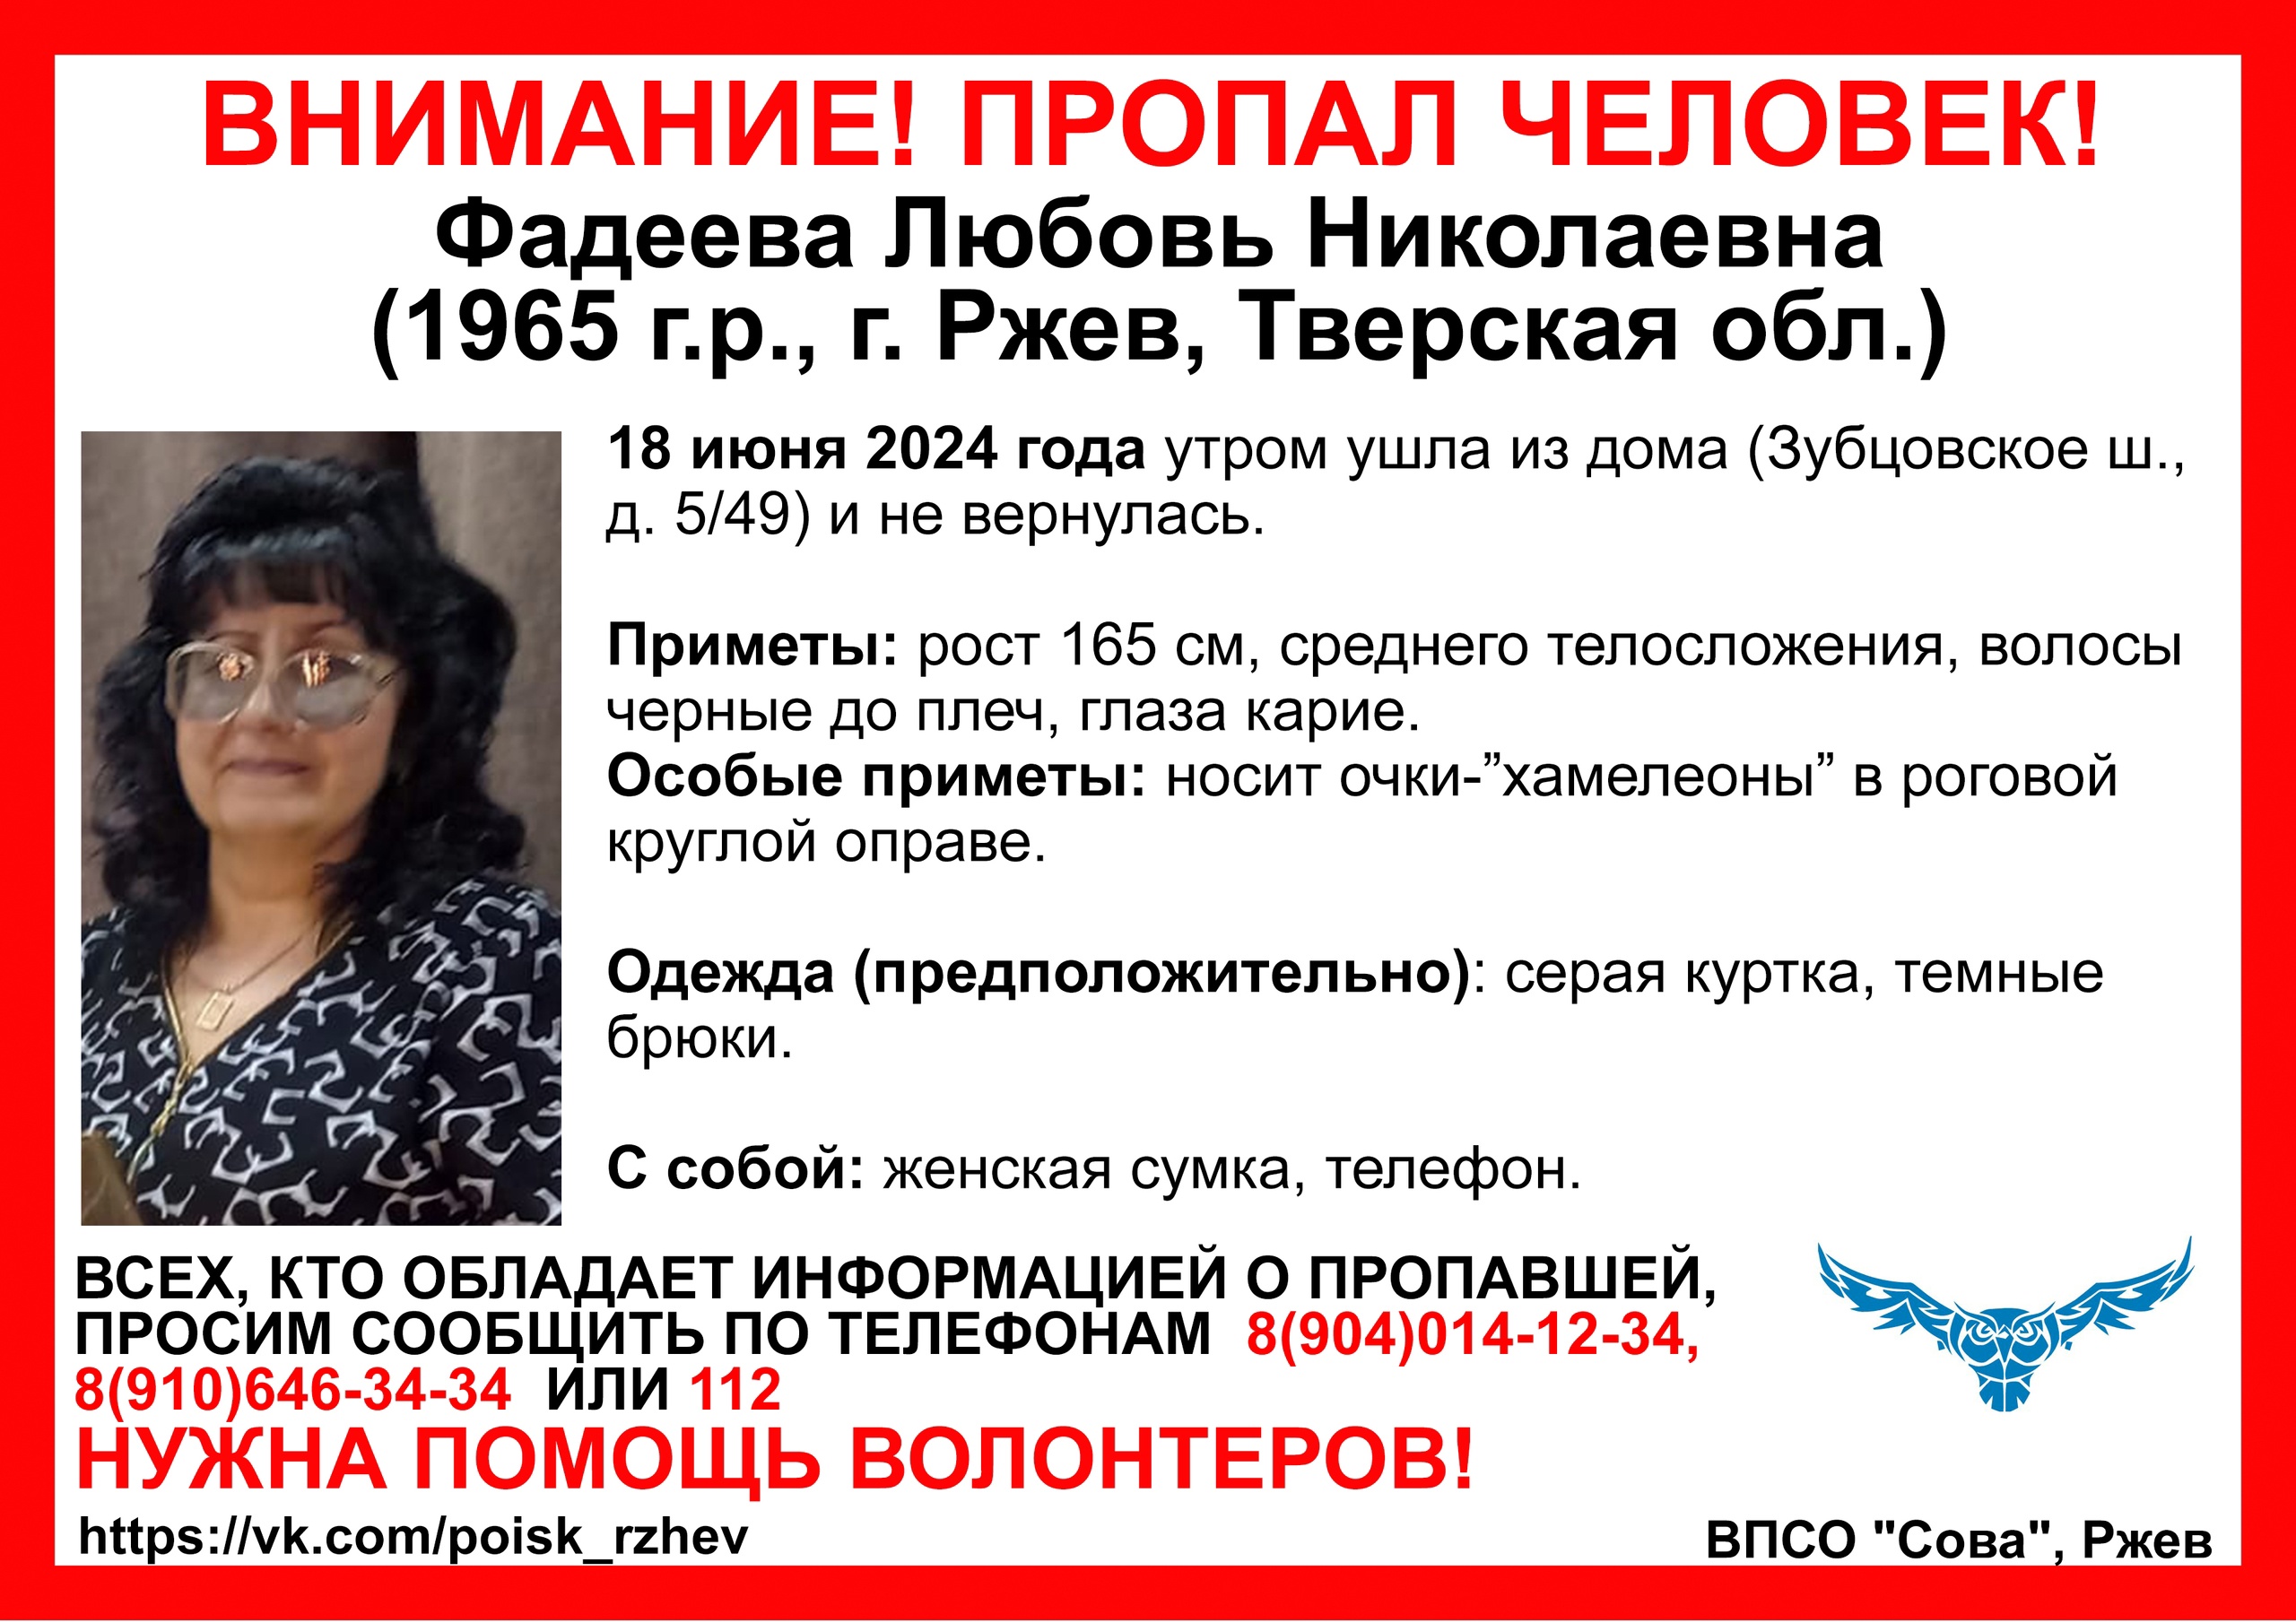 В Тверской области пропала женщина в очках-"хамелеонах"